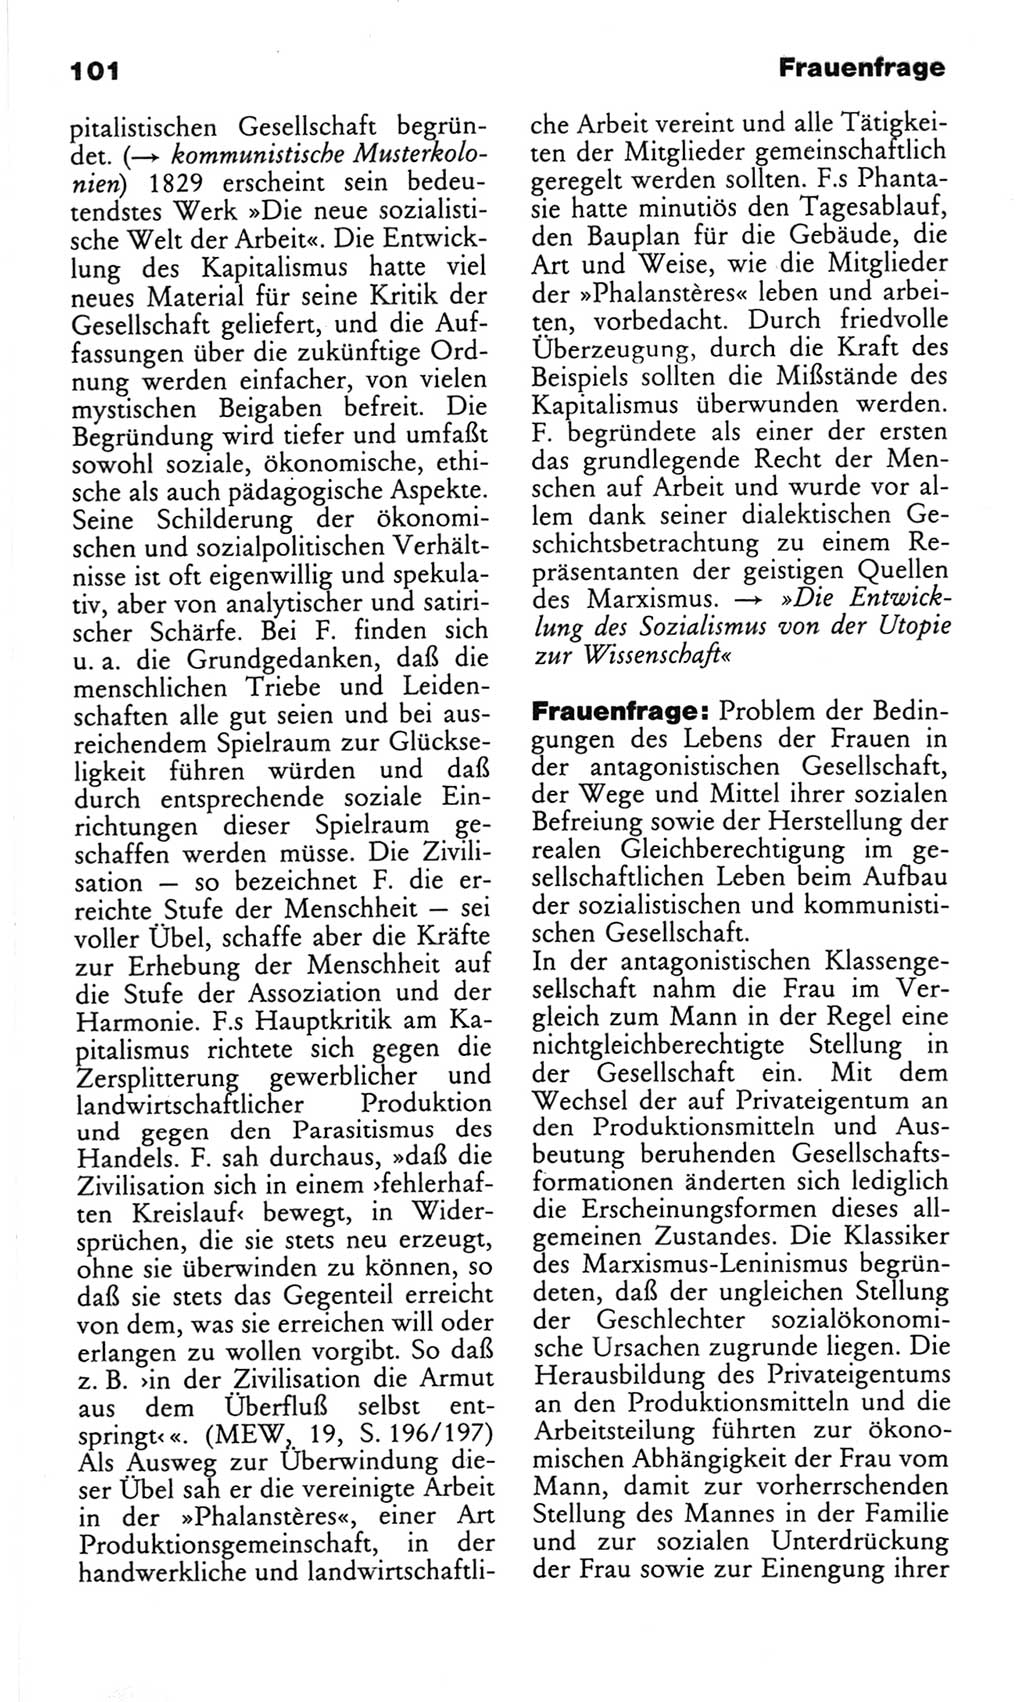 Wörterbuch des wissenschaftlichen Kommunismus [Deutsche Demokratische Republik (DDR)] 1982, Seite 101 (Wb. wiss. Komm. DDR 1982, S. 101)